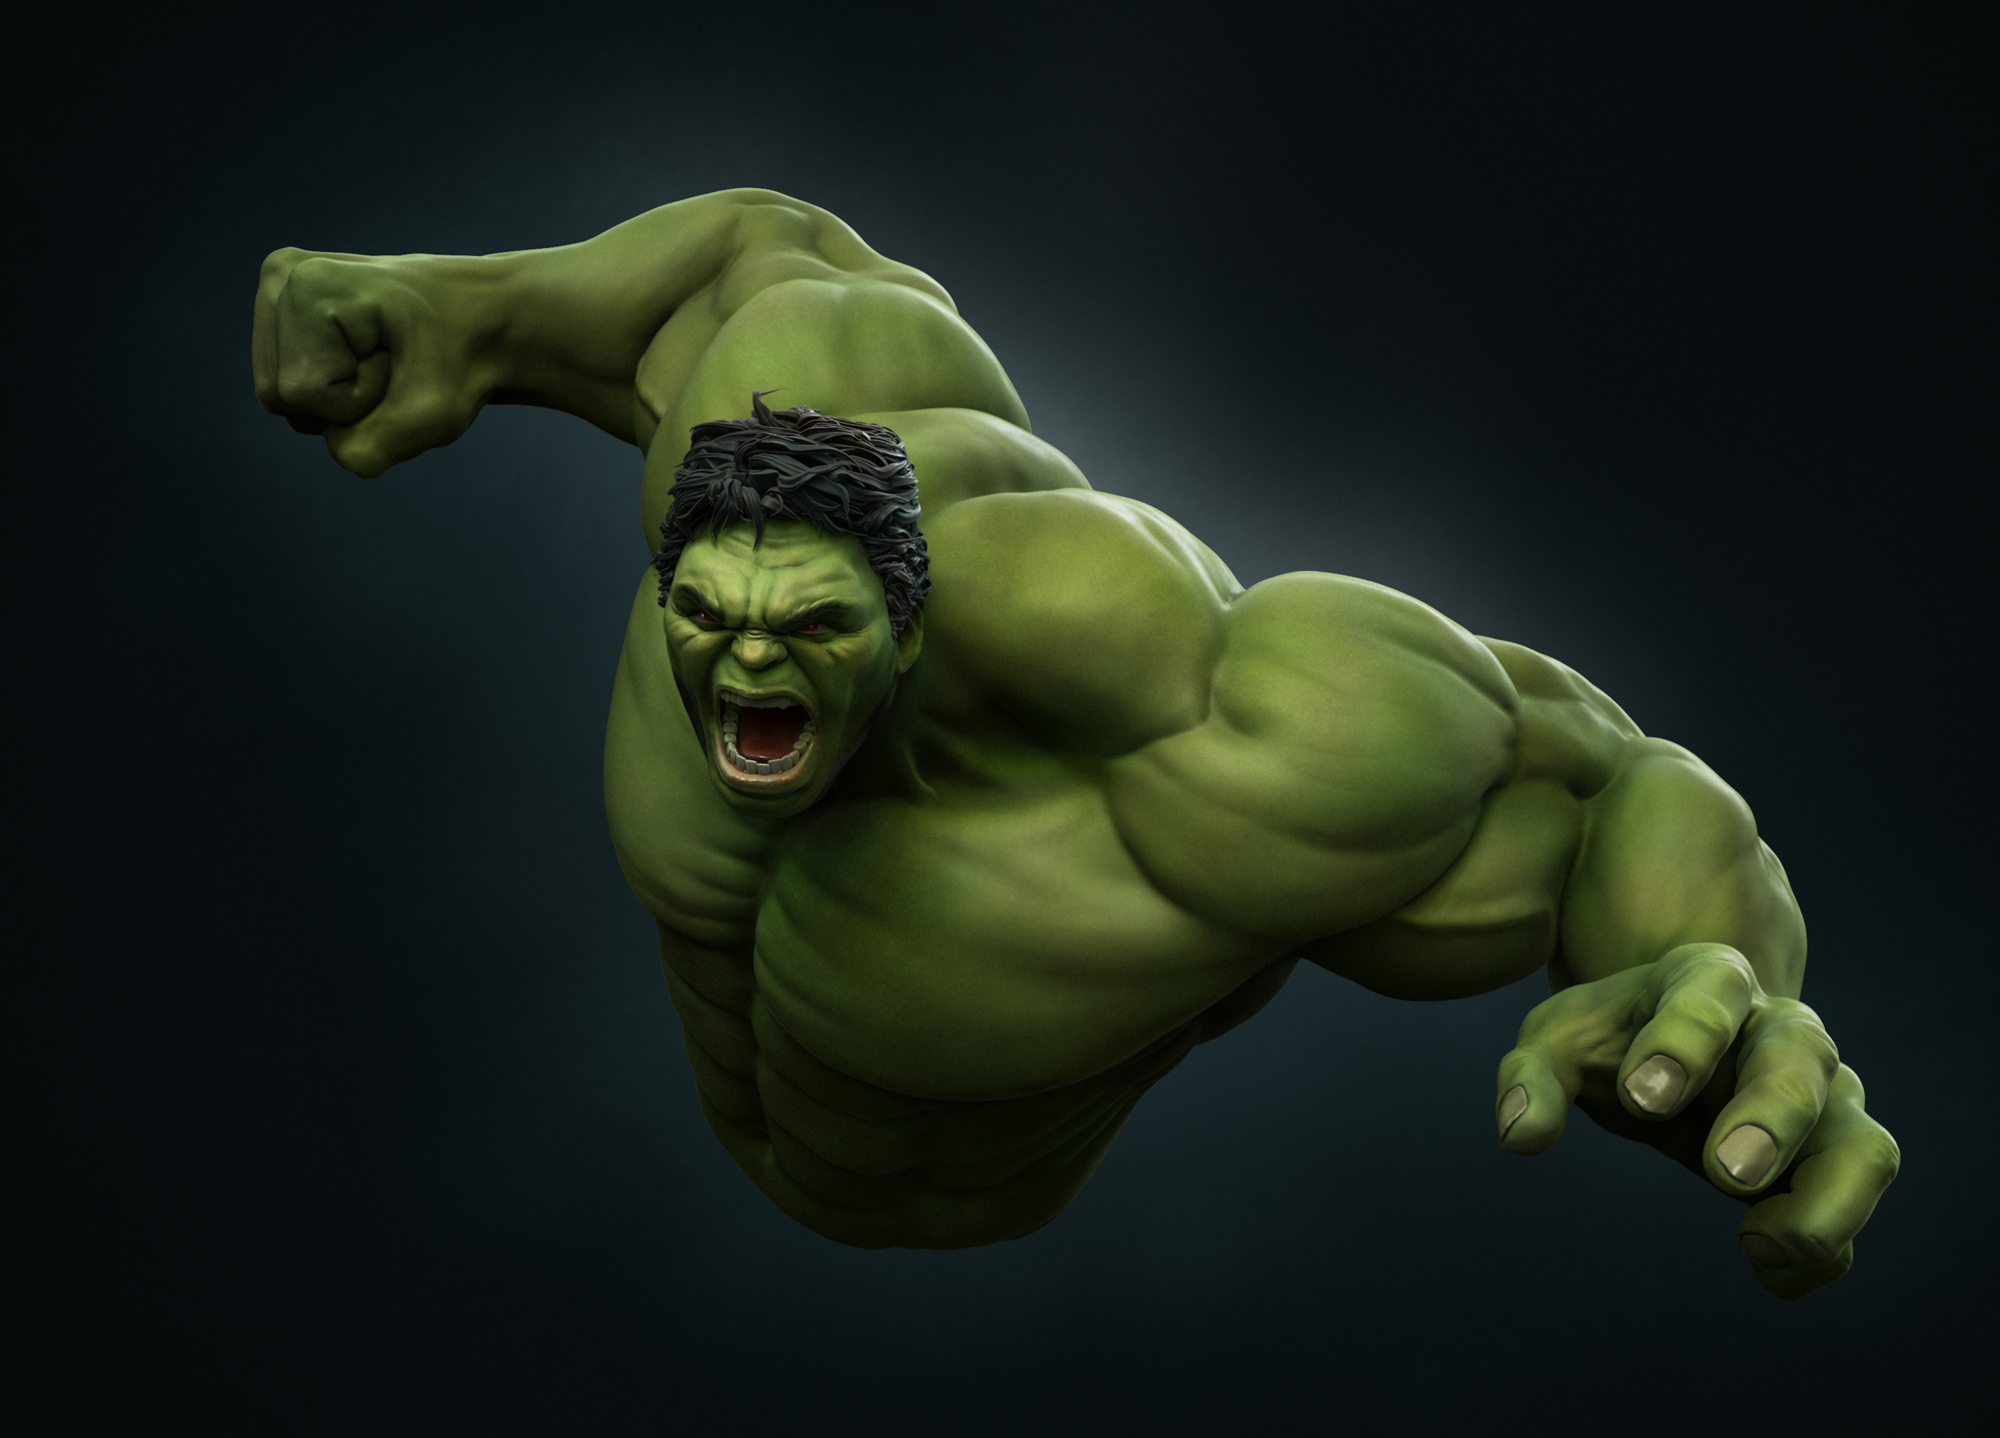 The Hulk hulk hulk